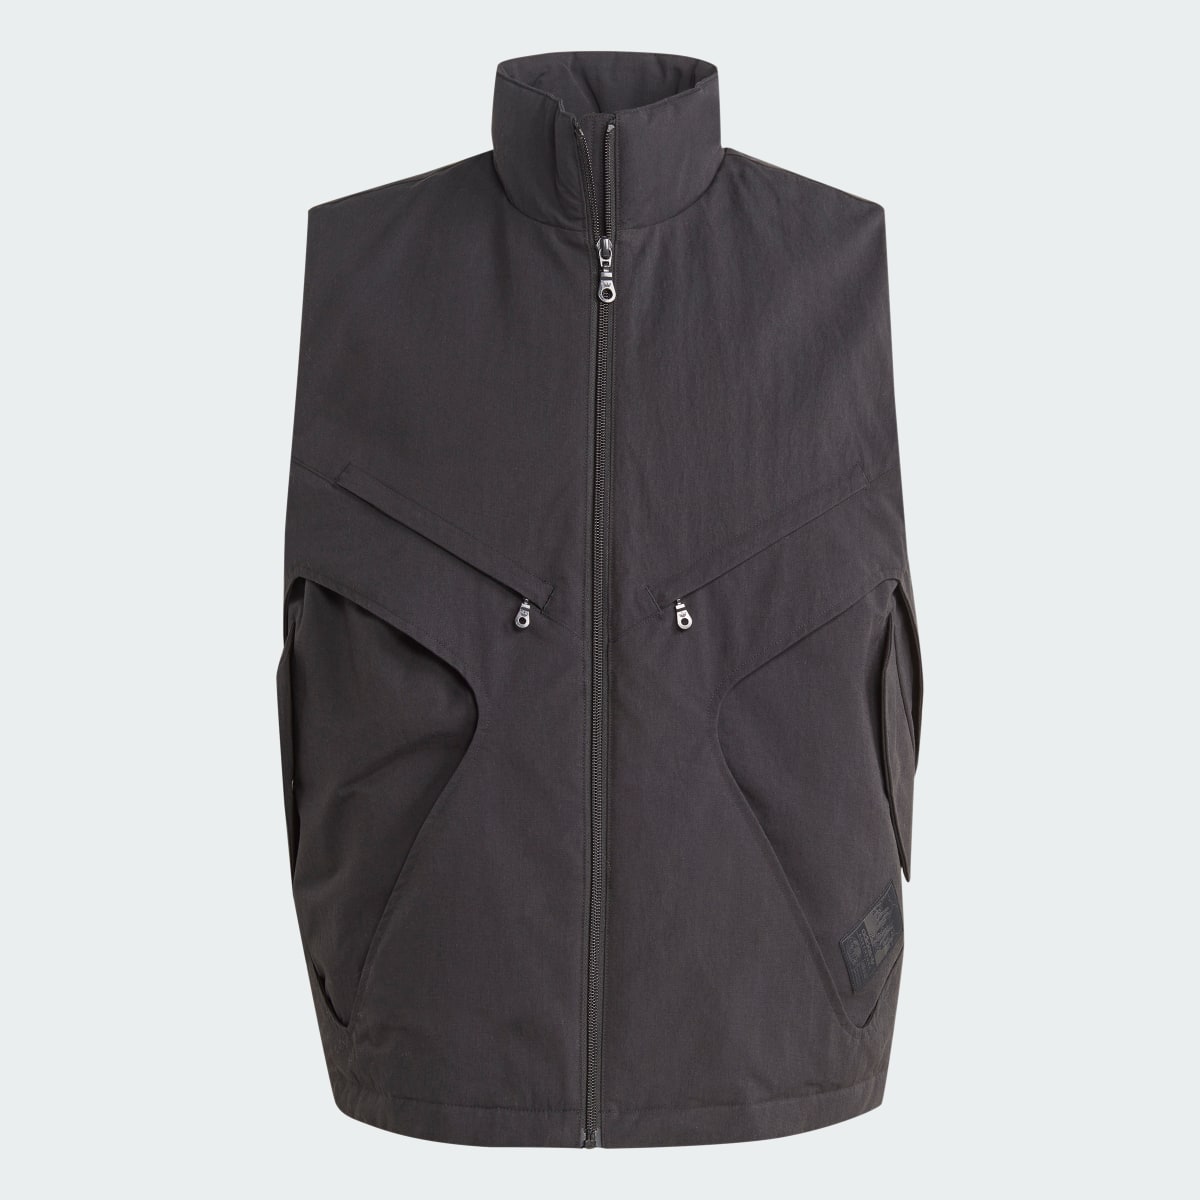 Adidas Adventure Premium Multi-Pocket Vest. 5